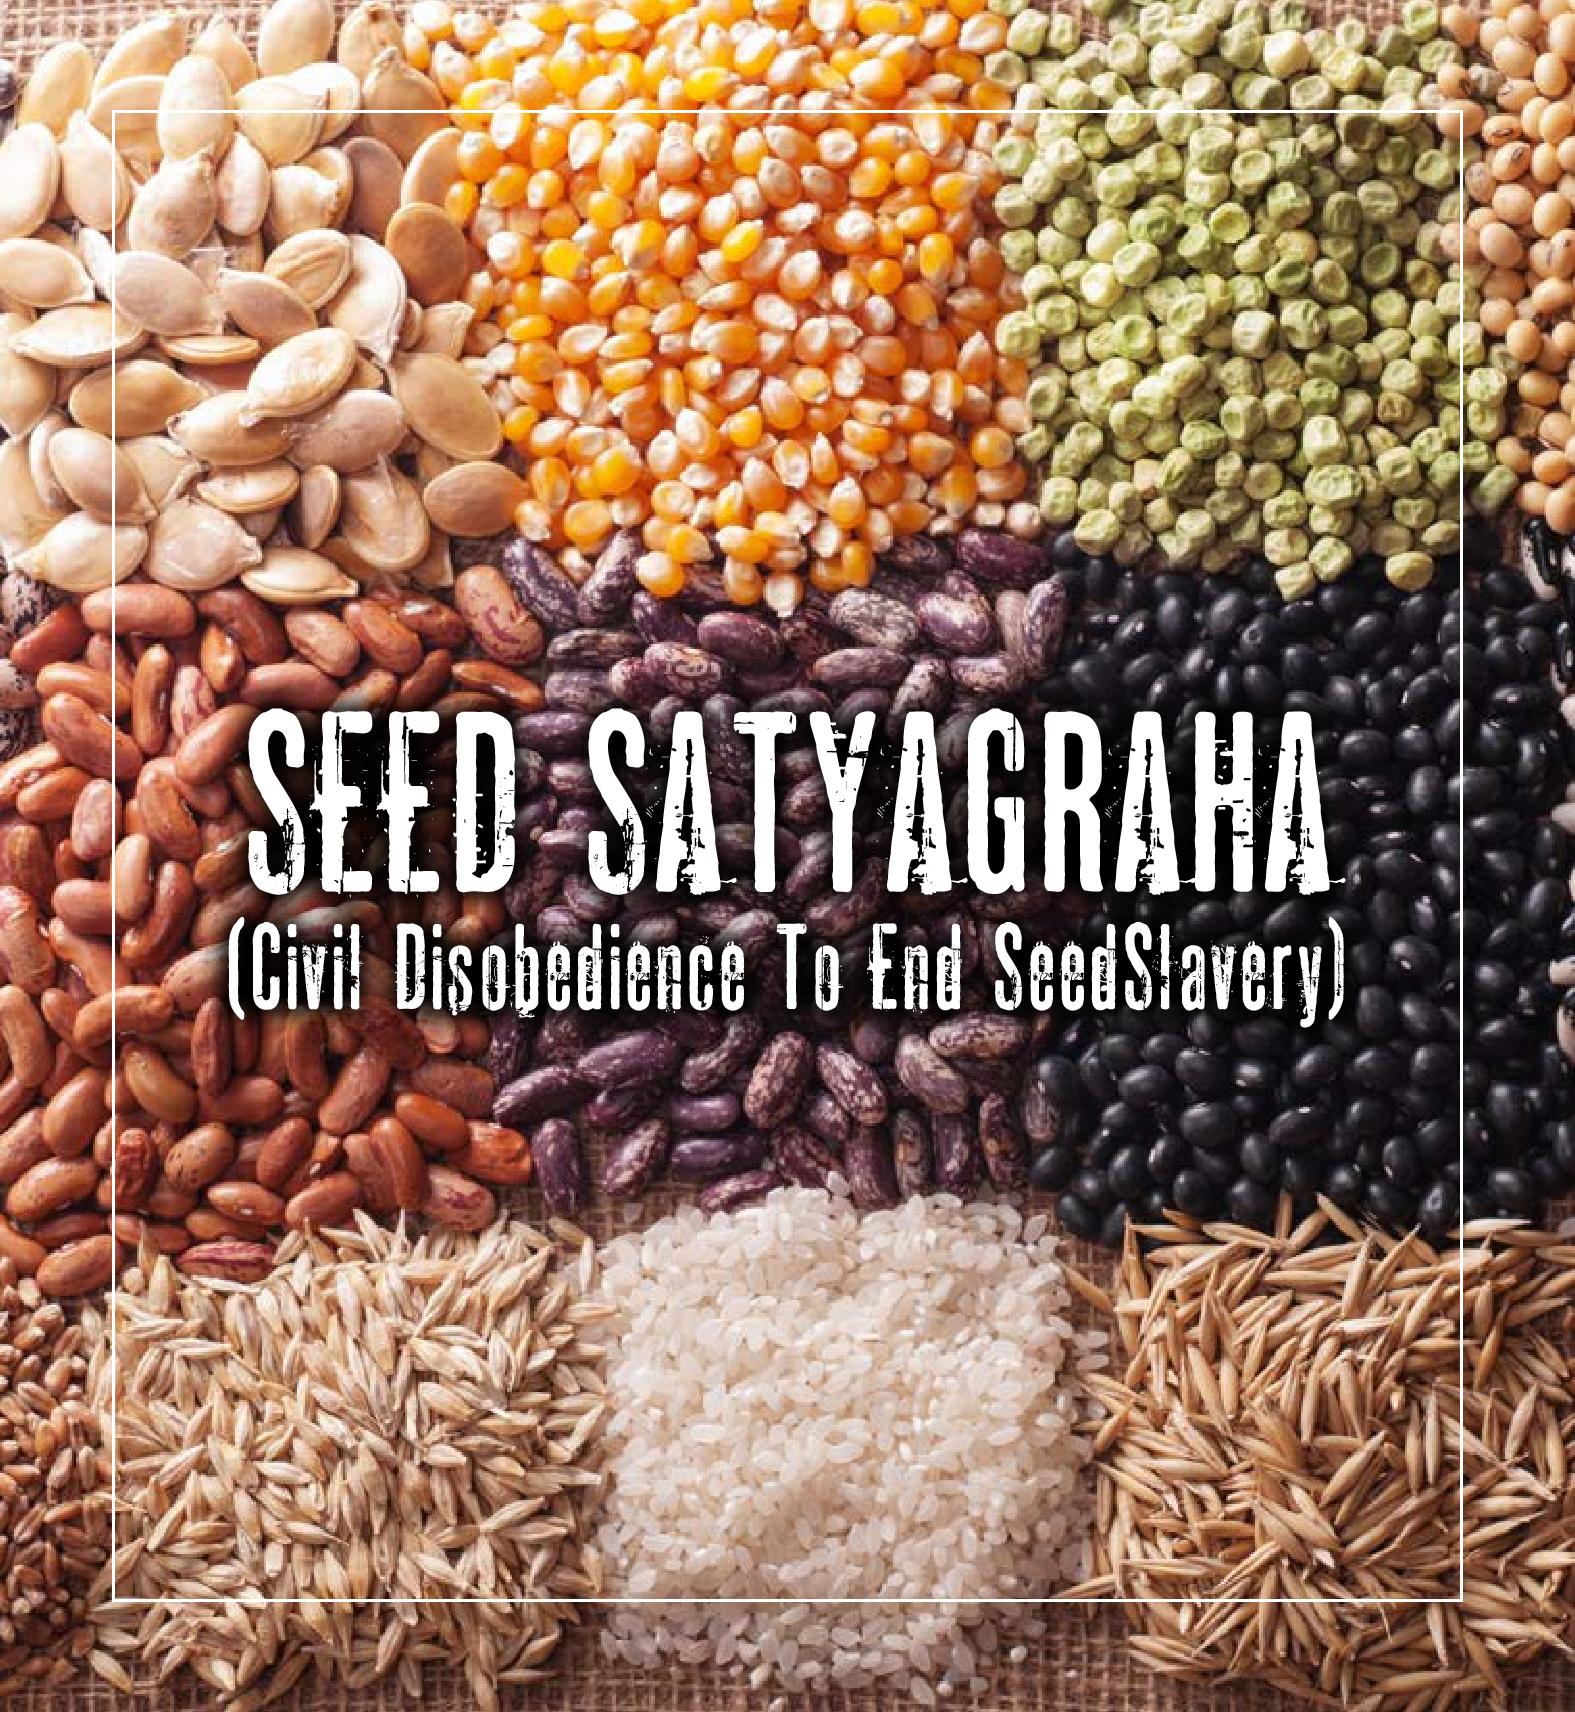 Seed-Satyagraha-Booklet-1-page-001.jpg - 551.53 kb